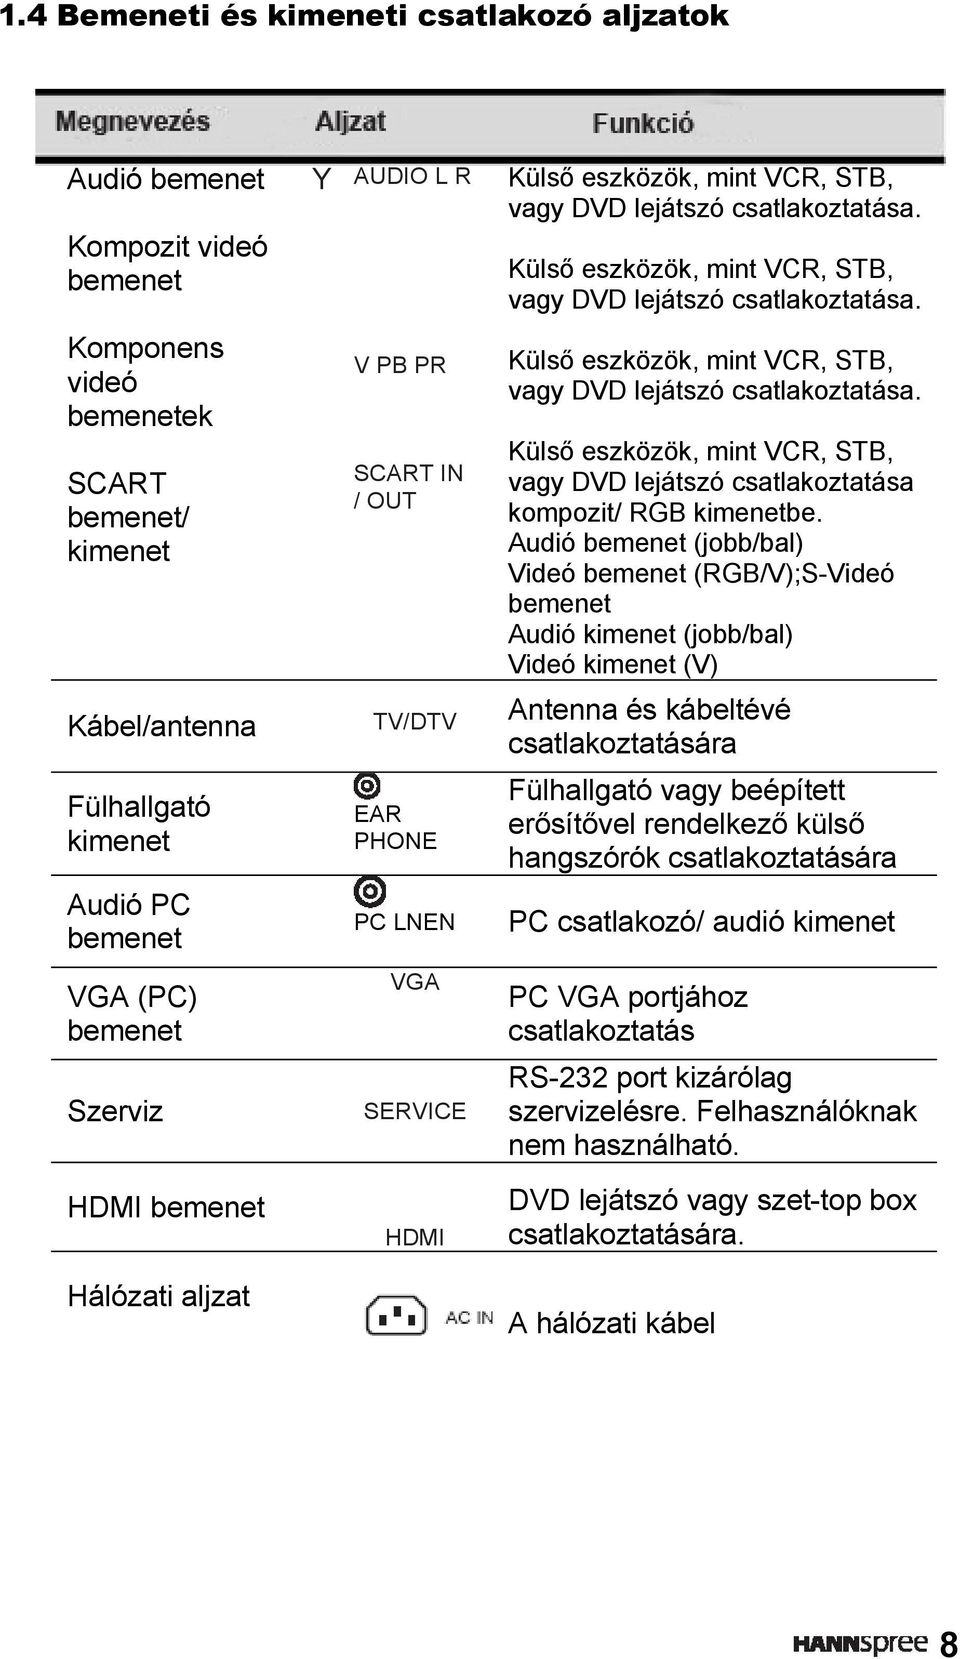 Audió bemenet (jobb/bal) Videó bemenet (RGB/V);S-Videó bemenet Audió kimenet (jobb/bal) Videó kimenet (V) Kábel/antenna TV/DTV Antenna és kábeltévé csatlakoztatására Fülhallgató kimenet Audió PC